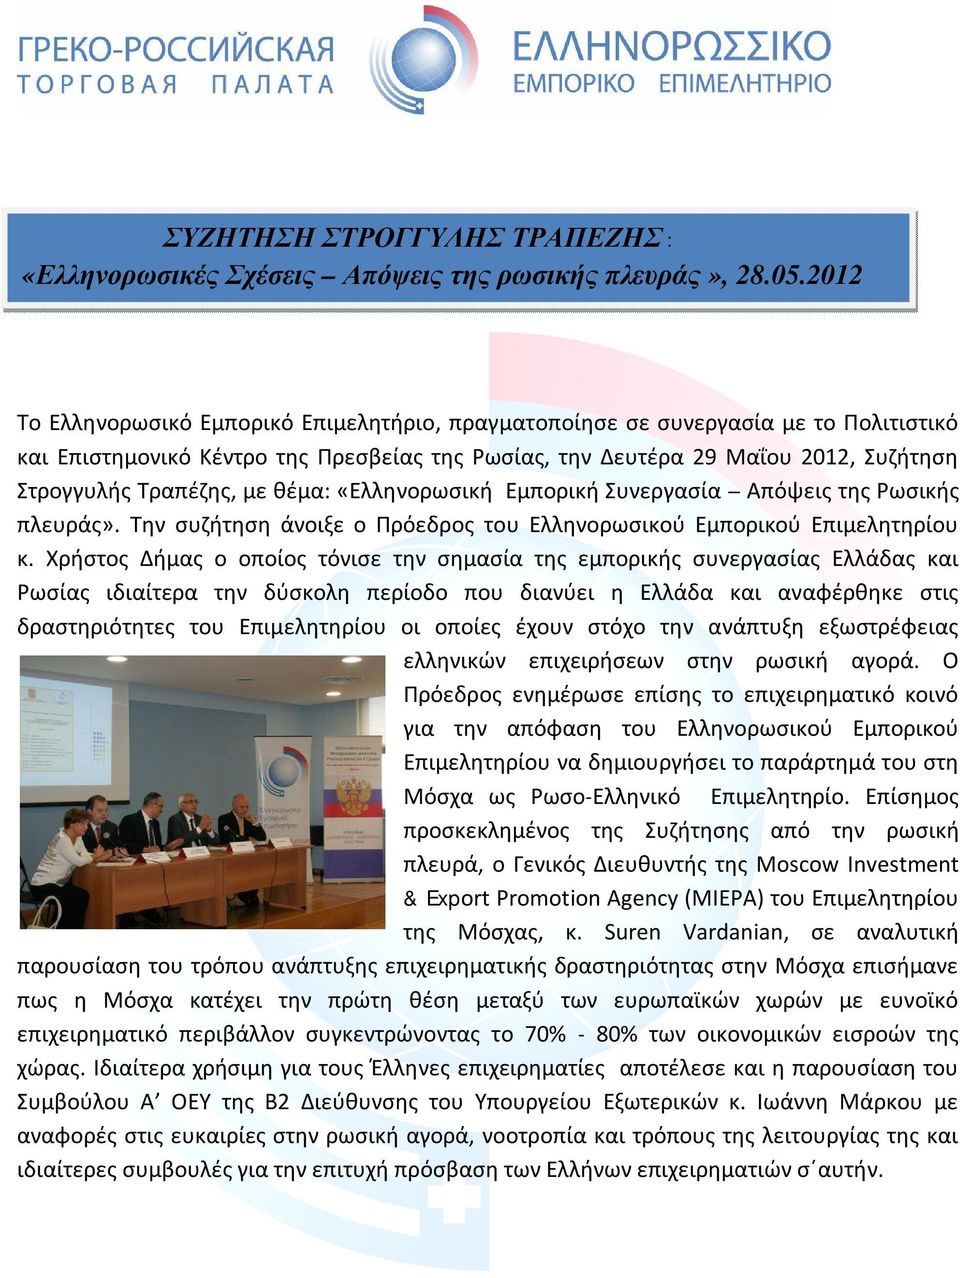 με θέμα: «Ελληνορωσική Εμπορική Συνεργασία Απόψεις της Ρωσικής πλευράς». Την συζήτηση άνοιξε ο Πρόεδρος του Ελληνορωσικού Εμπορικού Επιμελητηρίου κ.